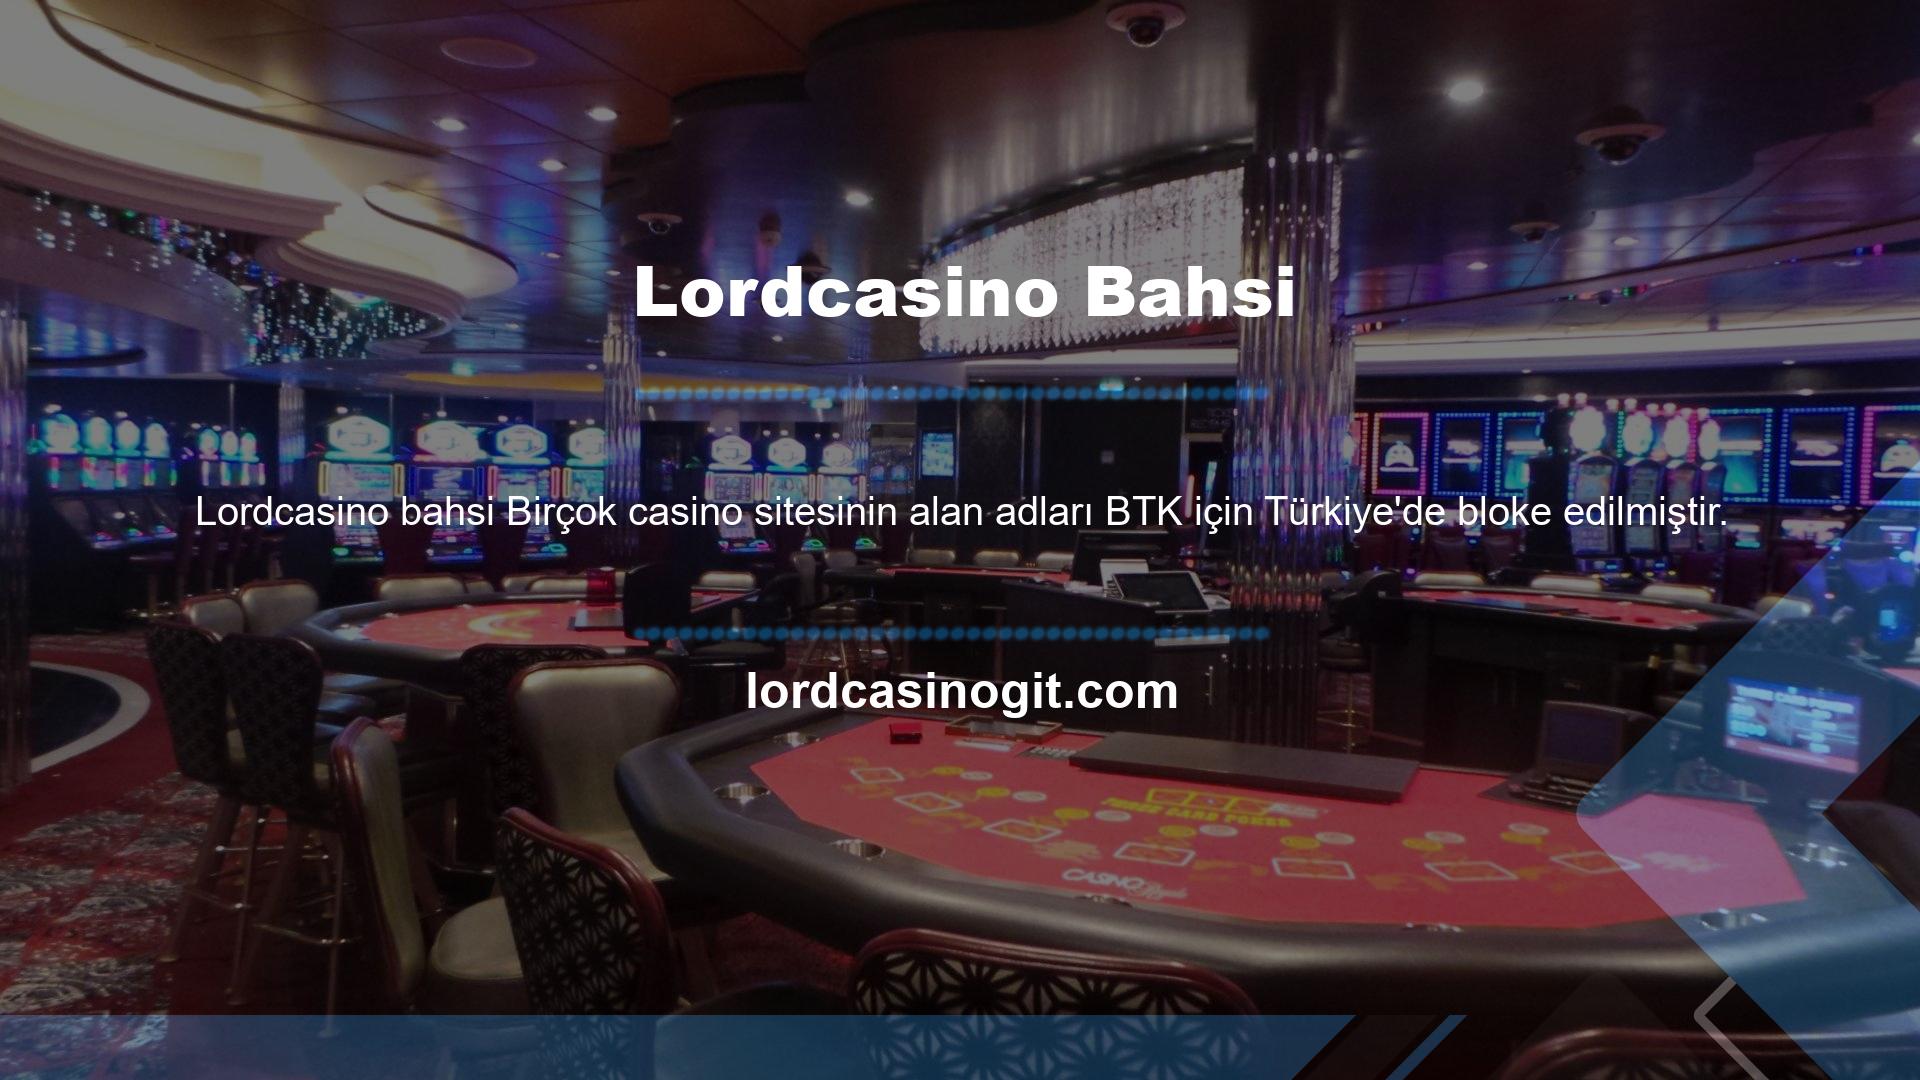 Lisanslı bir site olmasına rağmen, Türkiye'de casino devlet tarafından yasaklanmıştır